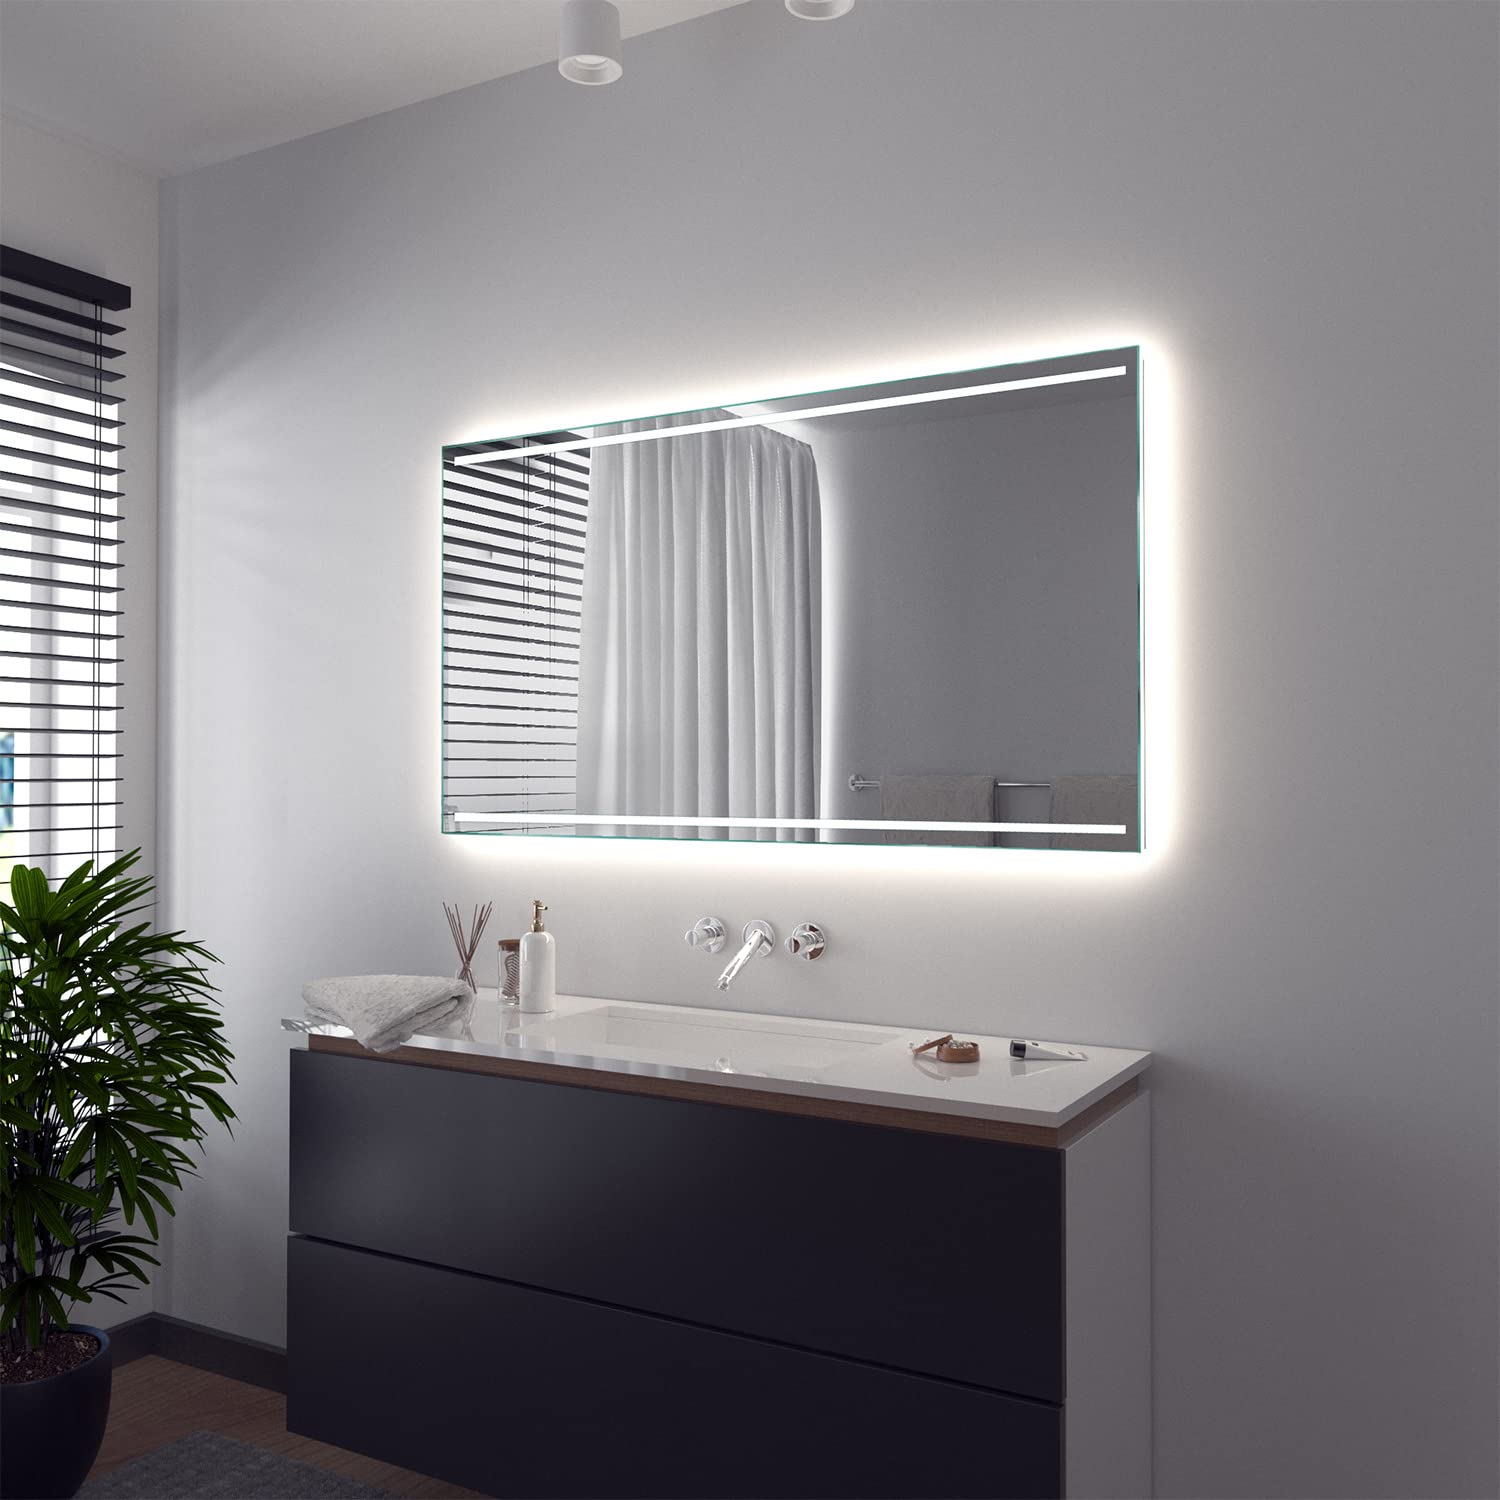 SARAR Wandspiegel mit integriertem LED-Beleuchtung 60x60 cm Made in Germany Casoria Badspiegel Spiegel mit Beleuchtung Badezimmerspiegel nach-auf Maß